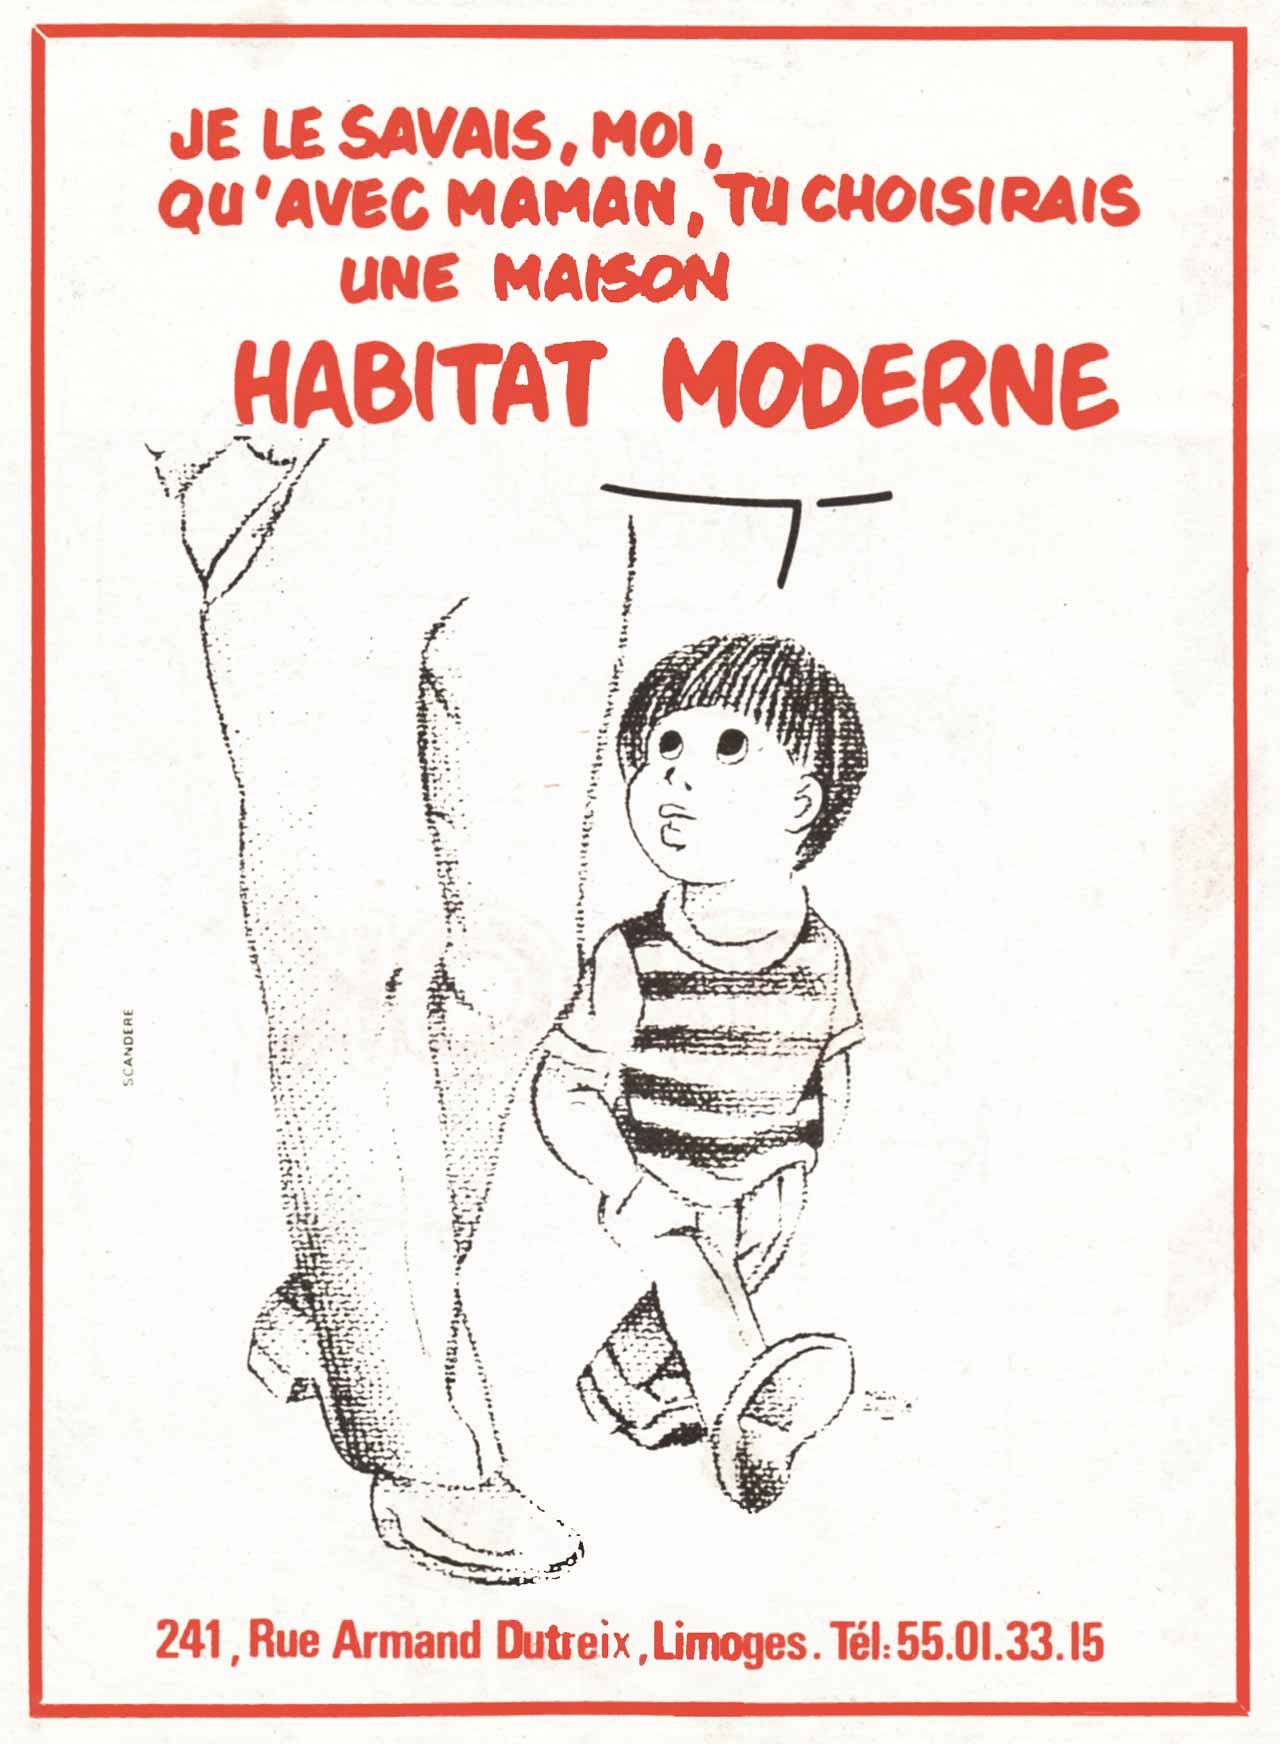 Annonce-presse Je le savais, moi qu'avec maman, tu choisirais une maison Habitat Moderne - agence Scandere 1986 - Marc-André BD Illustration Graphisme Limoges